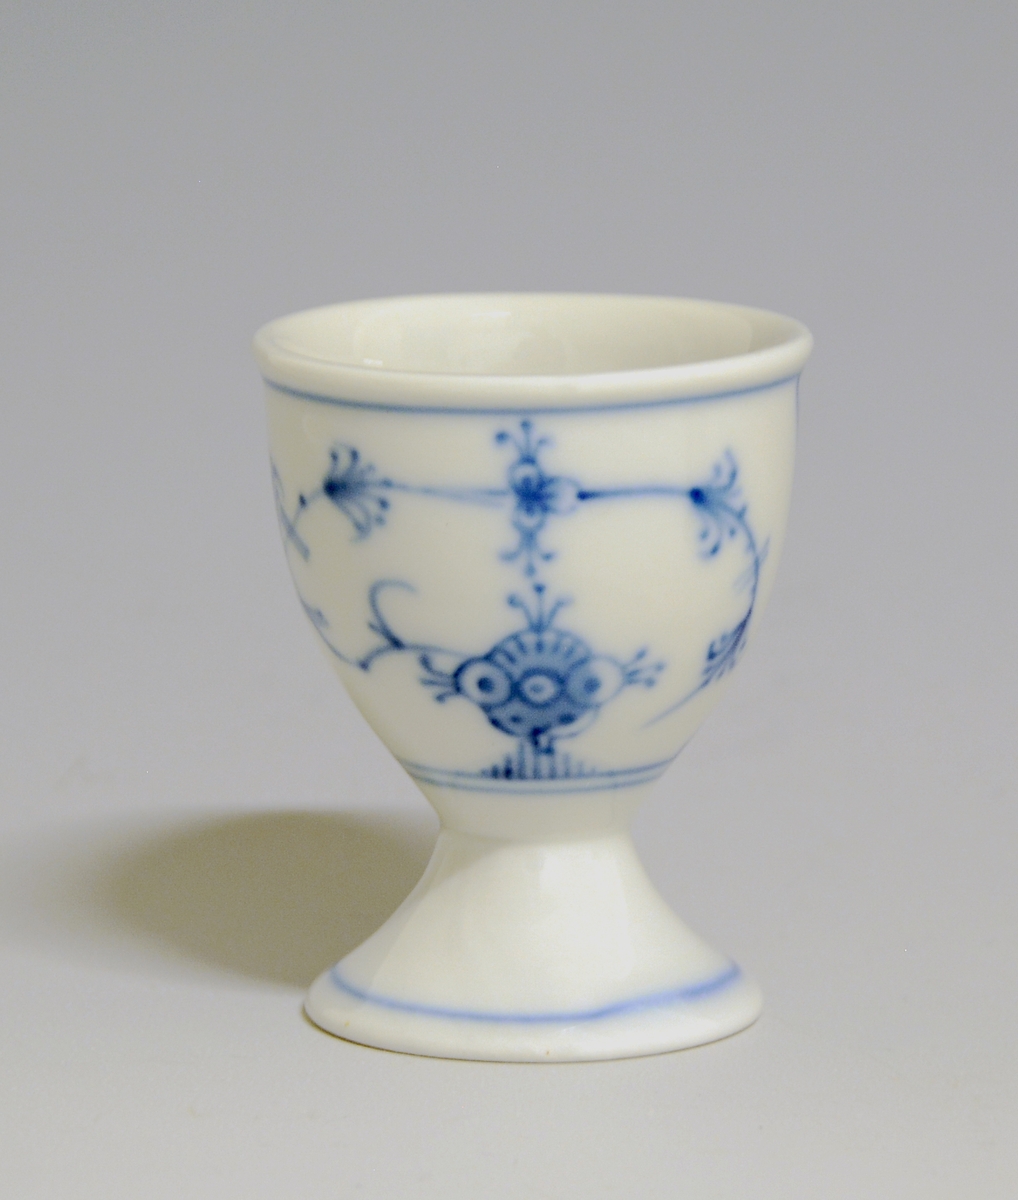 Eggeglass, med stett og hvit glasur. Dekorert med håndmalt stråmønster i blå underglasurdekor.

Modell: 1552
Dekor: Stråmønster i blått.

Uten fabrikkmerke.